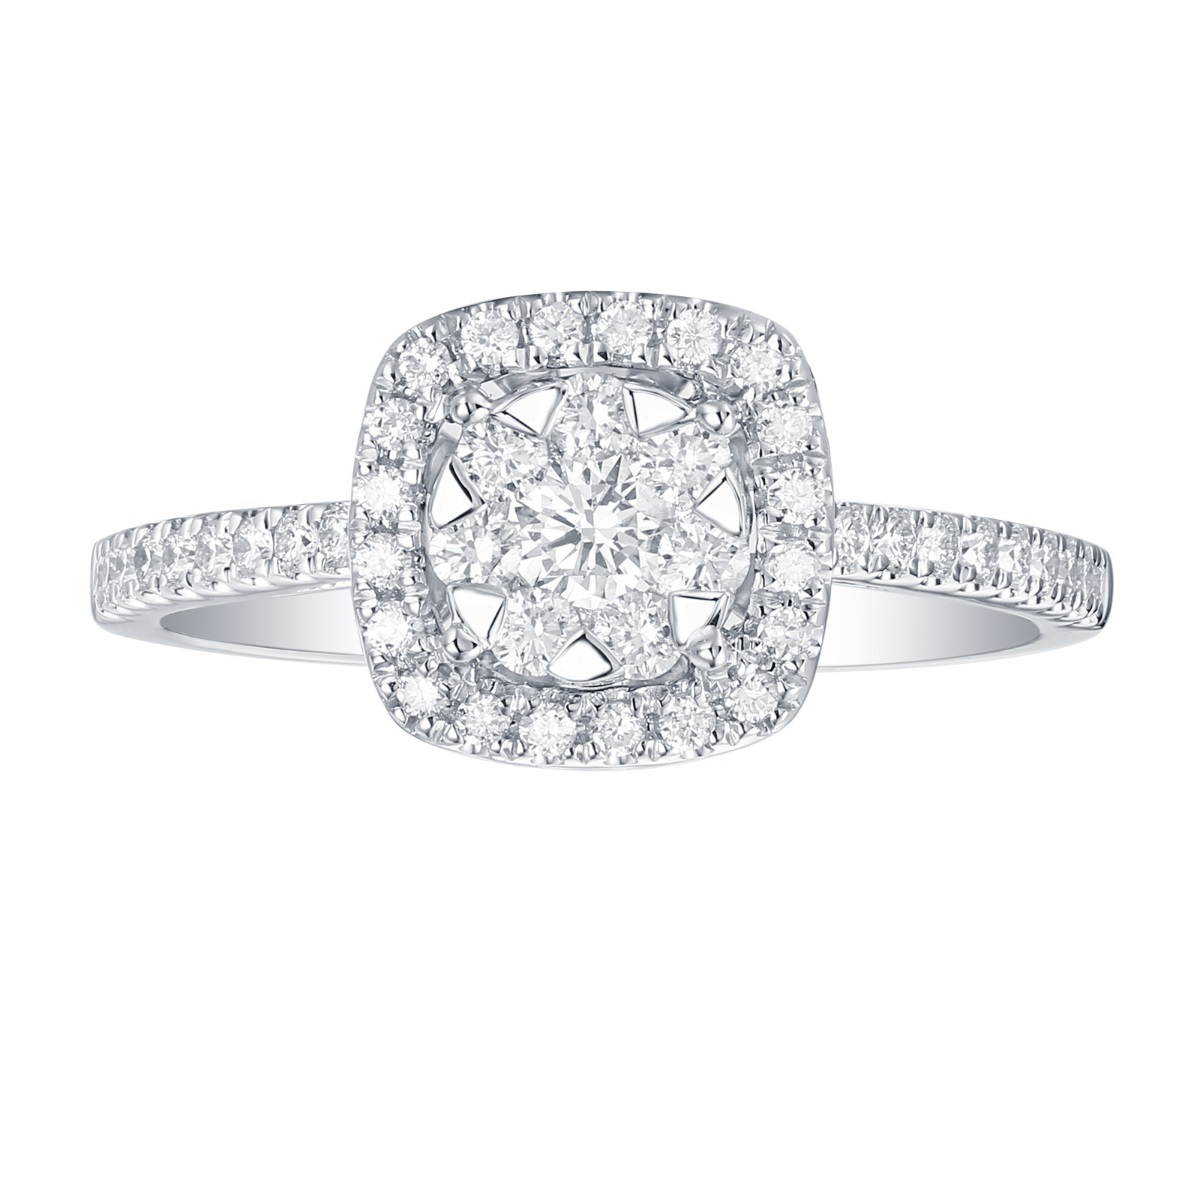 R36374WHT – 18K White Gold Diamond Ring, 0.6 TCW